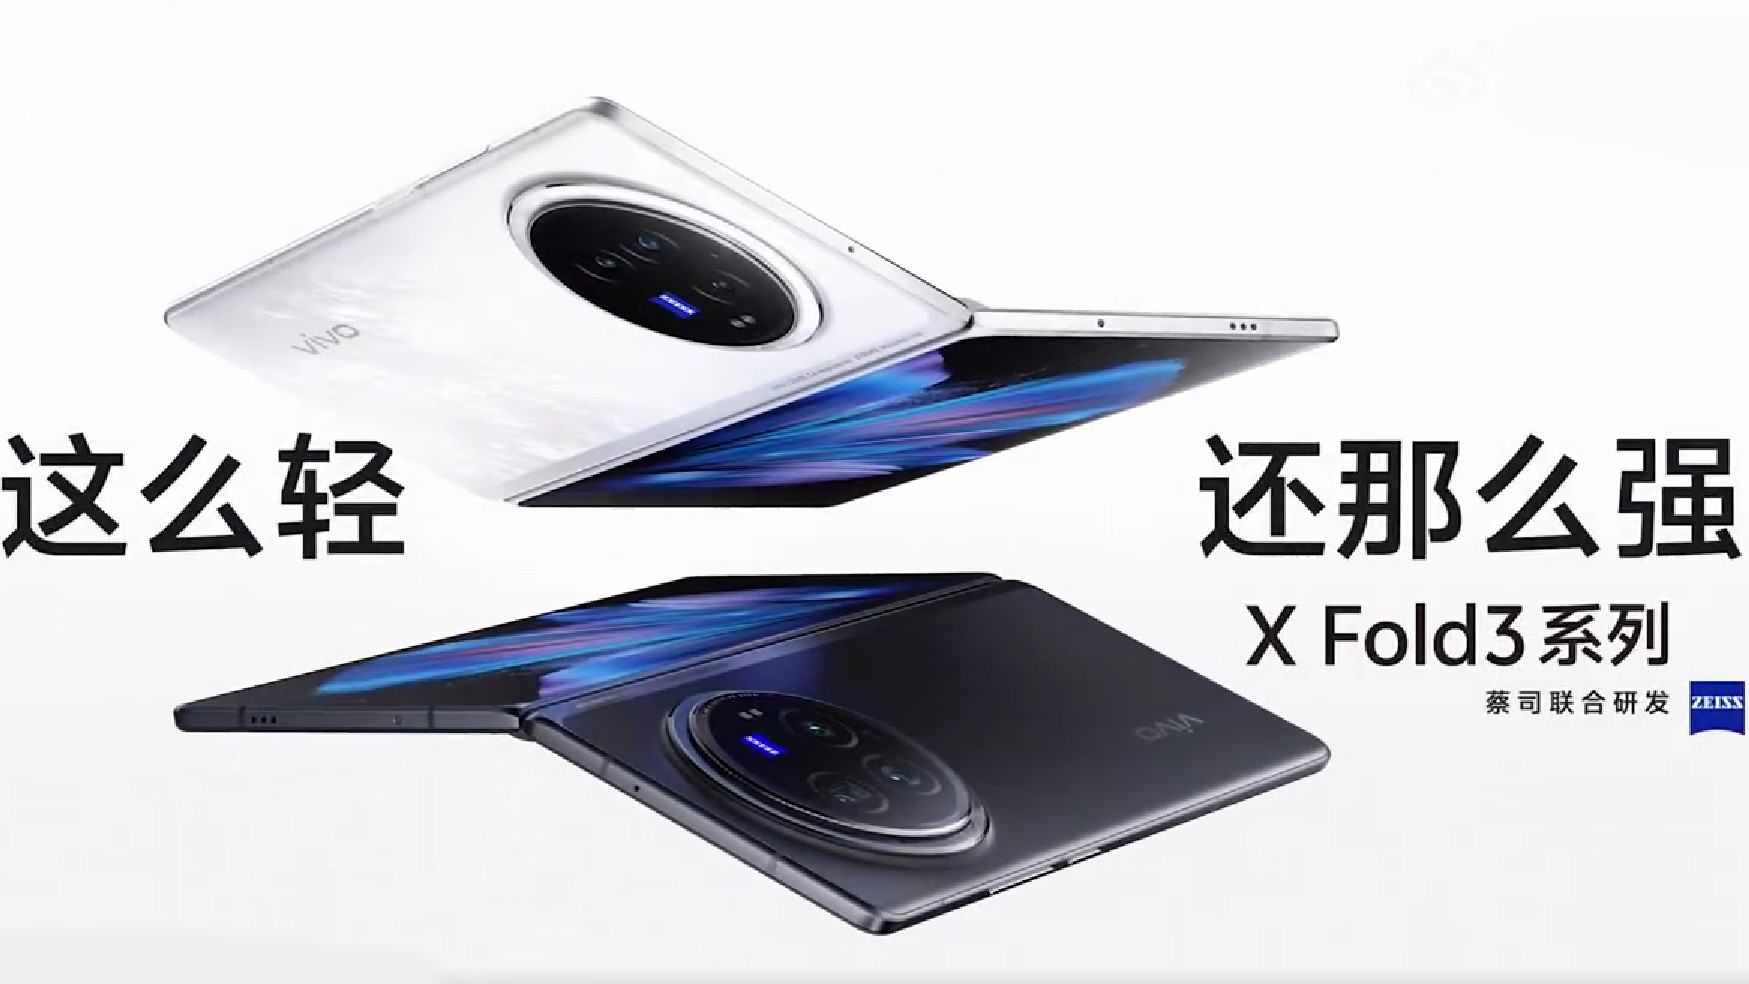 vivo x fold 3 series devices weibo